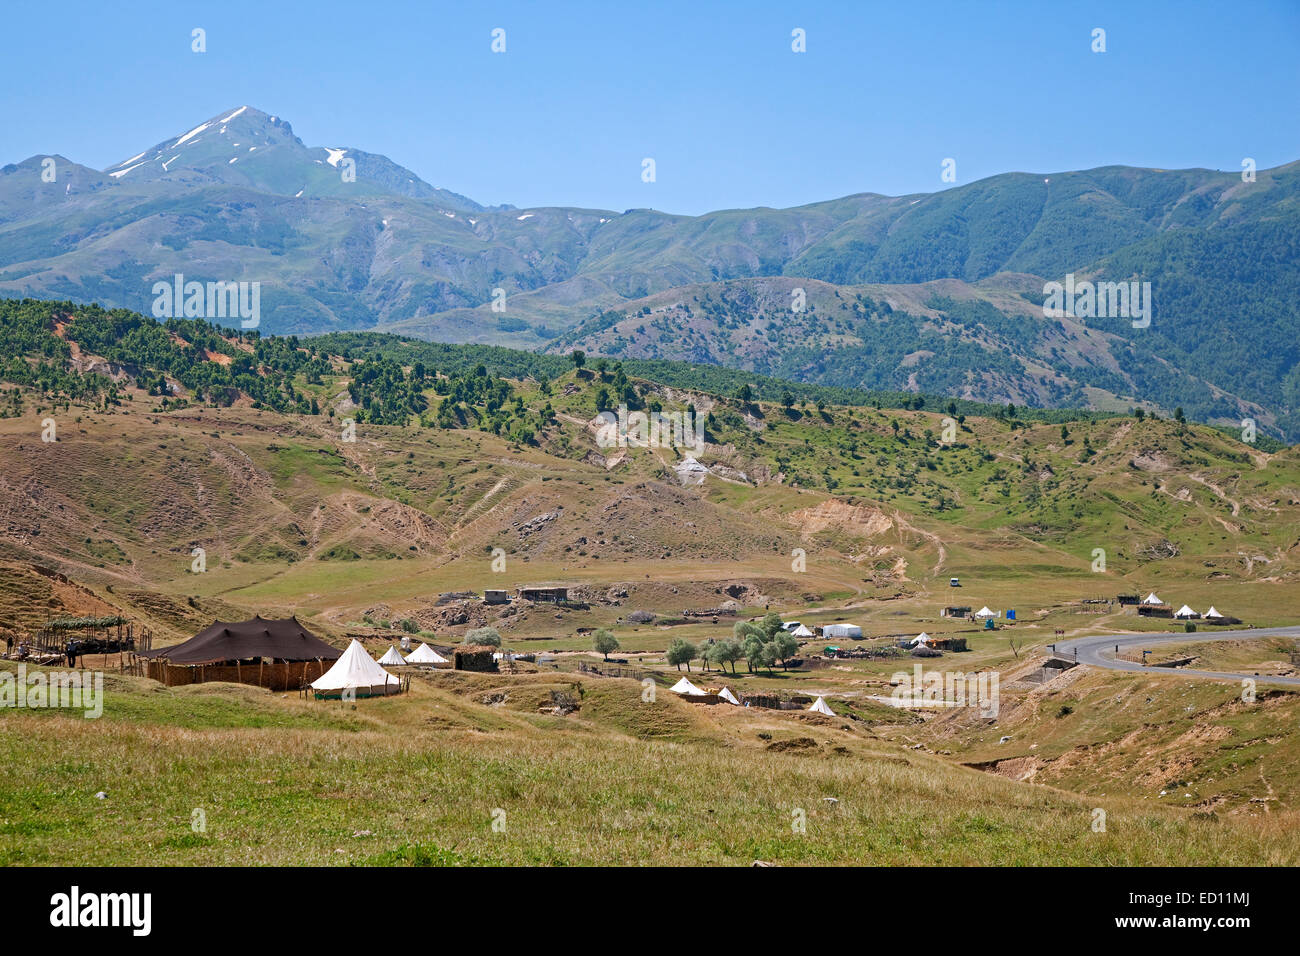 Tentes en semi nomad différends dans les montagnes de l'Est de l'Anatolie, Turquie Banque D'Images